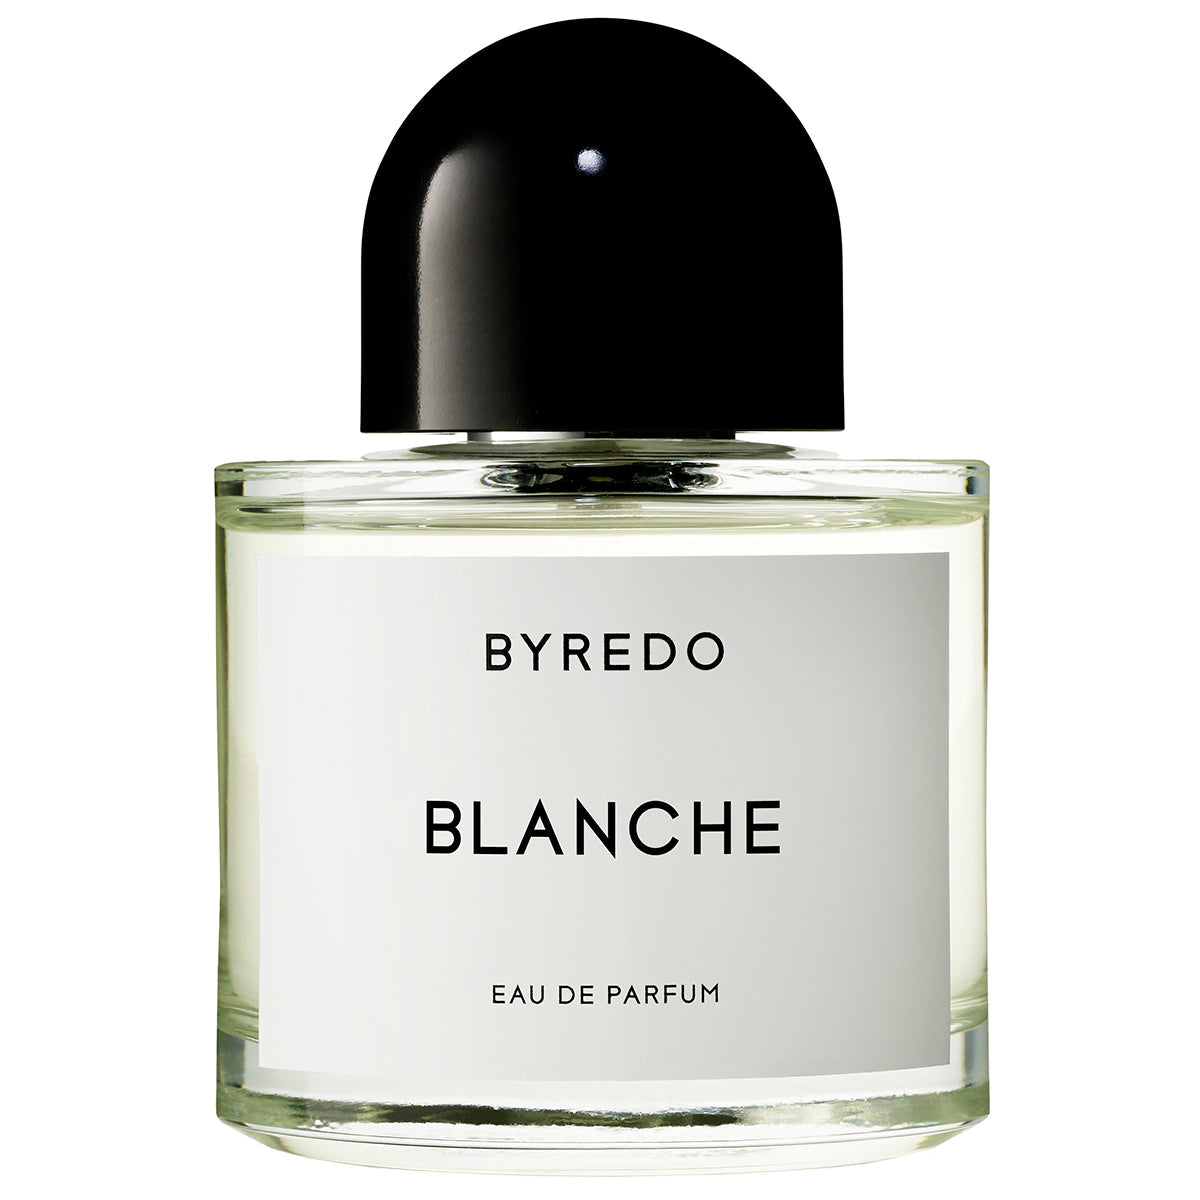 BYREDO BLANCHE Eau de Parfum